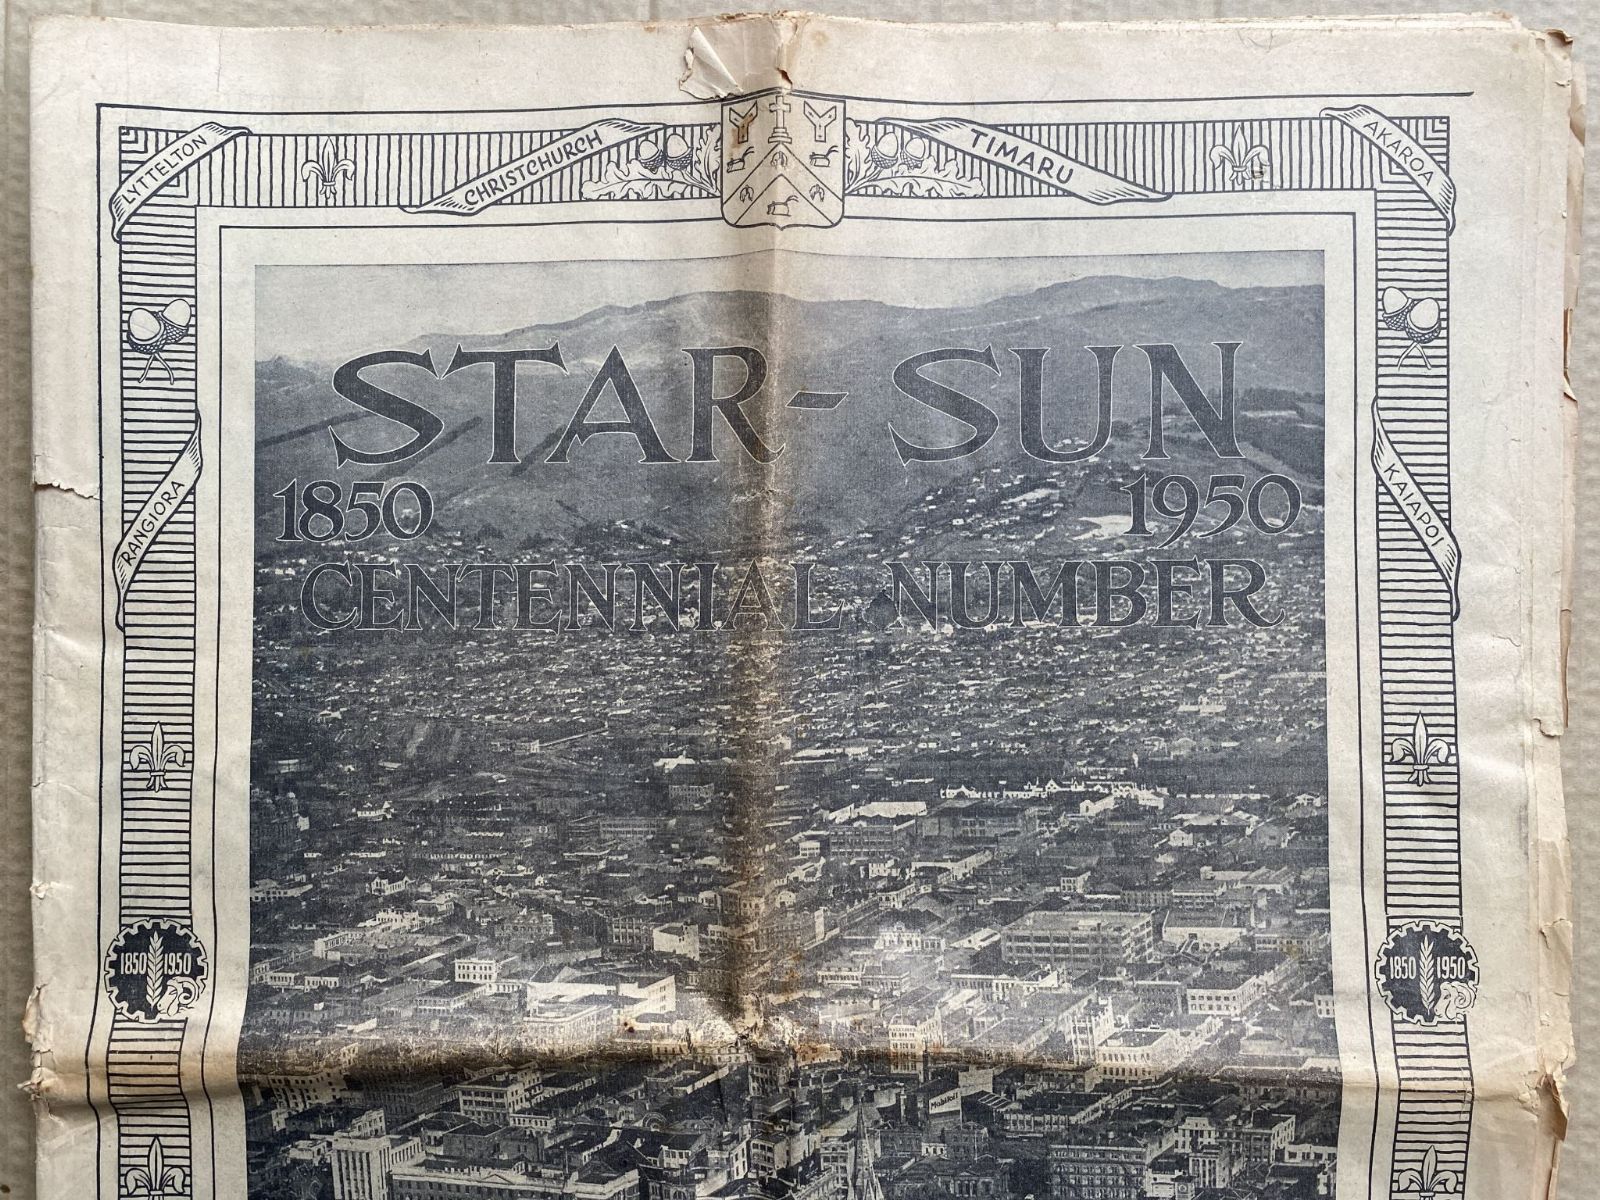 OLD NEWSPAPER: The Christchurch Star-Sun, 16 December 1950 - Centennial Edition